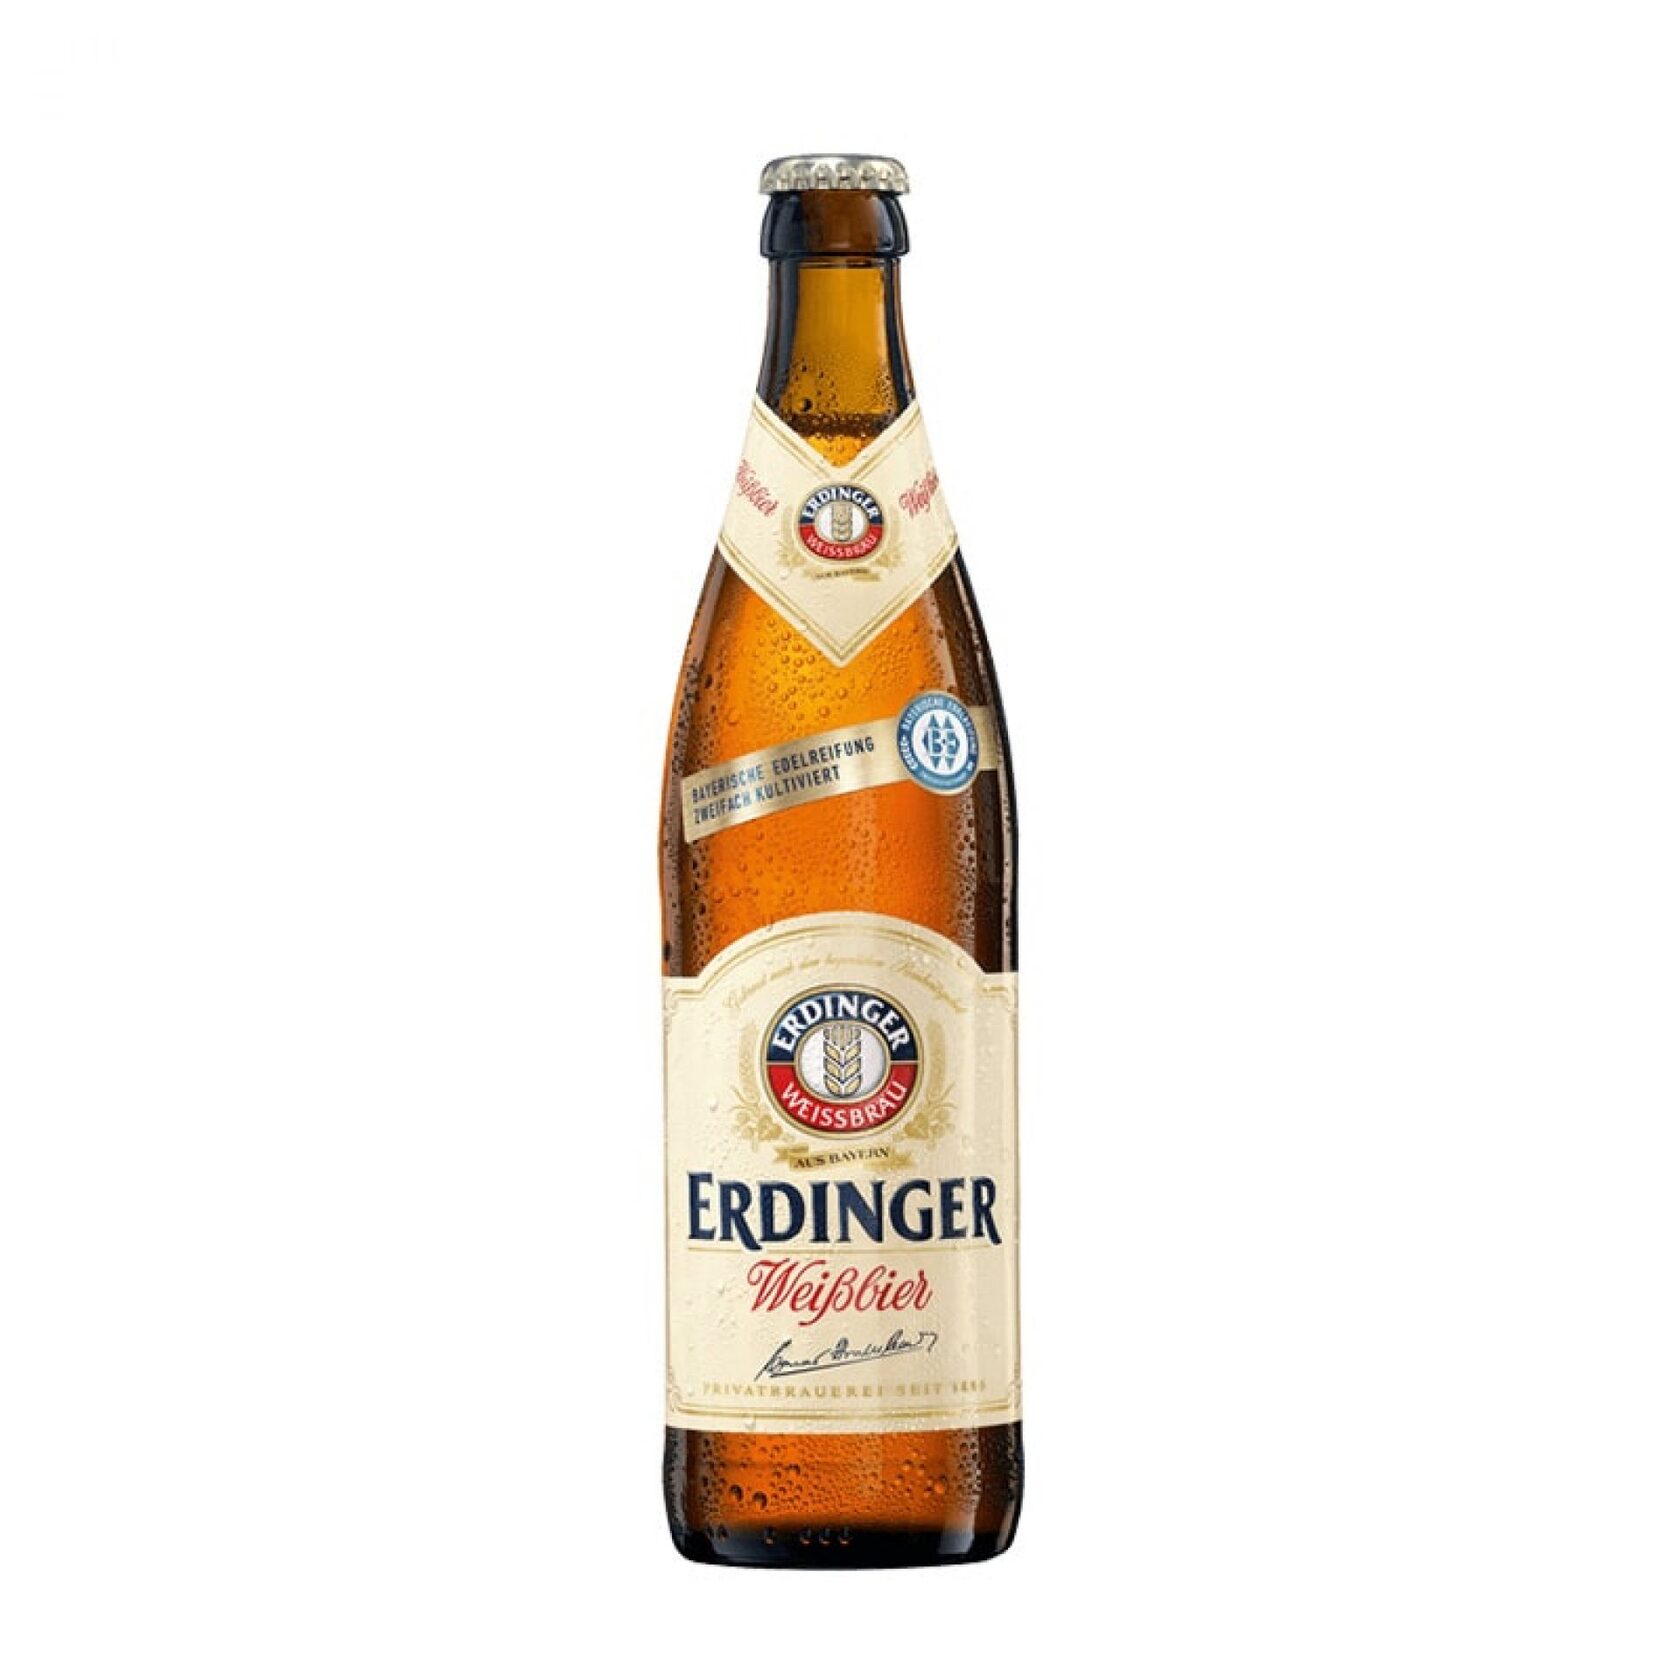 Нефильтрованное пиво в бутылках. Erdinger Weissbier пиво. • Безалкогольное пиво Erdinger Weissbier. Пиво Эрдингер нефильтрованное пшеничное. Пиво Erdinger Weissbier 0.5 светлое жб.